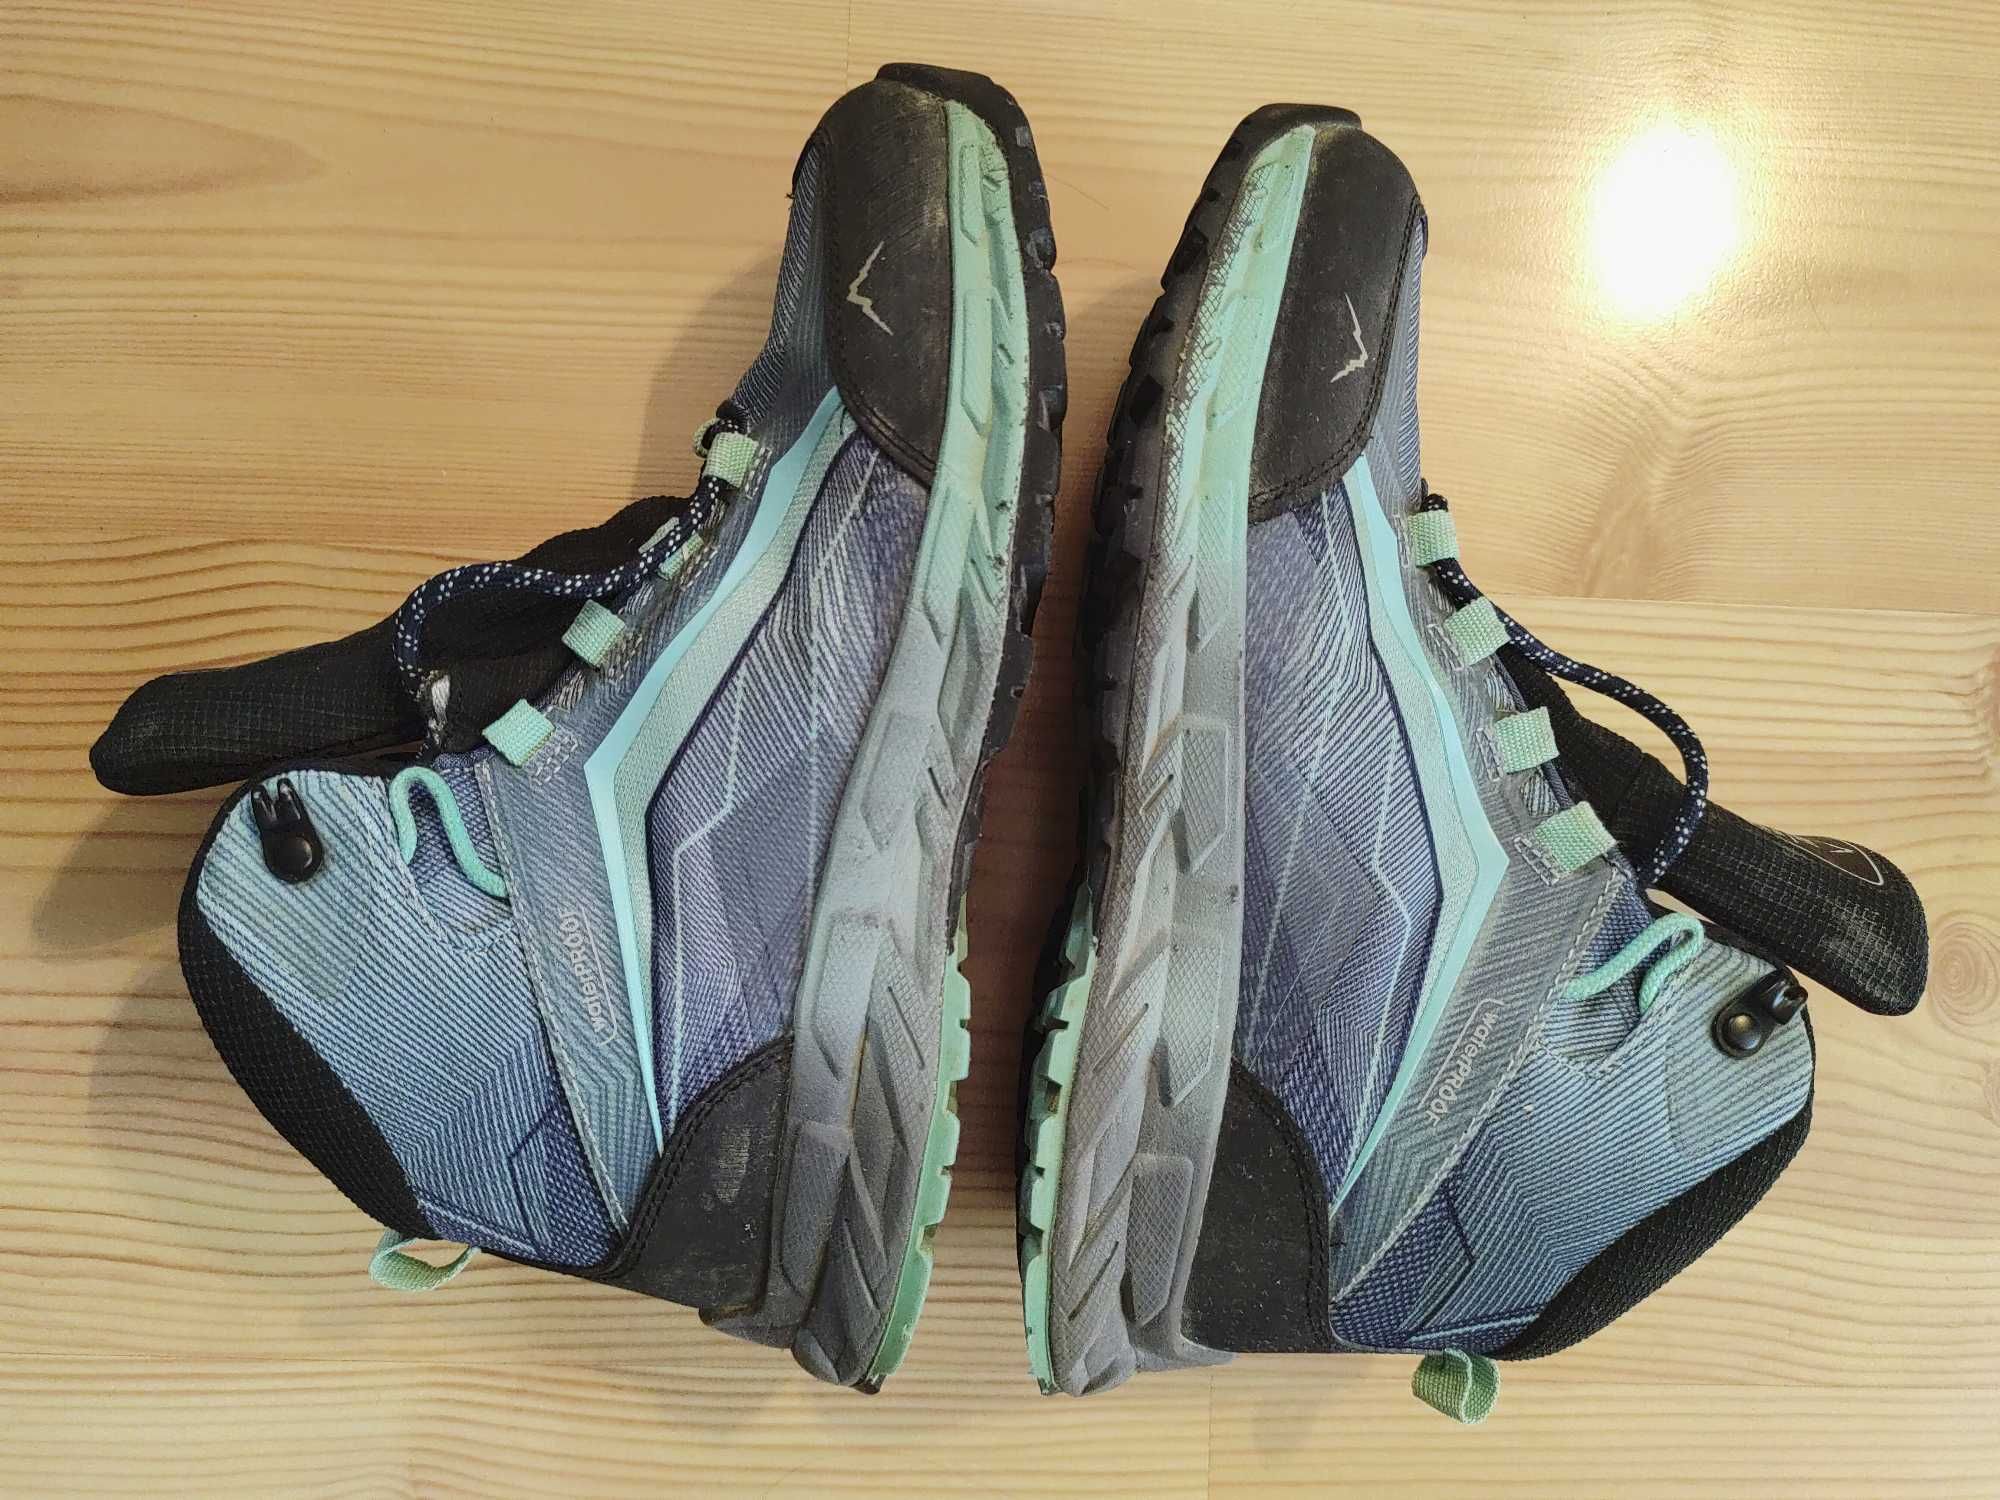 Damskie buty trekkingowe Elbrus r. 38 25cm